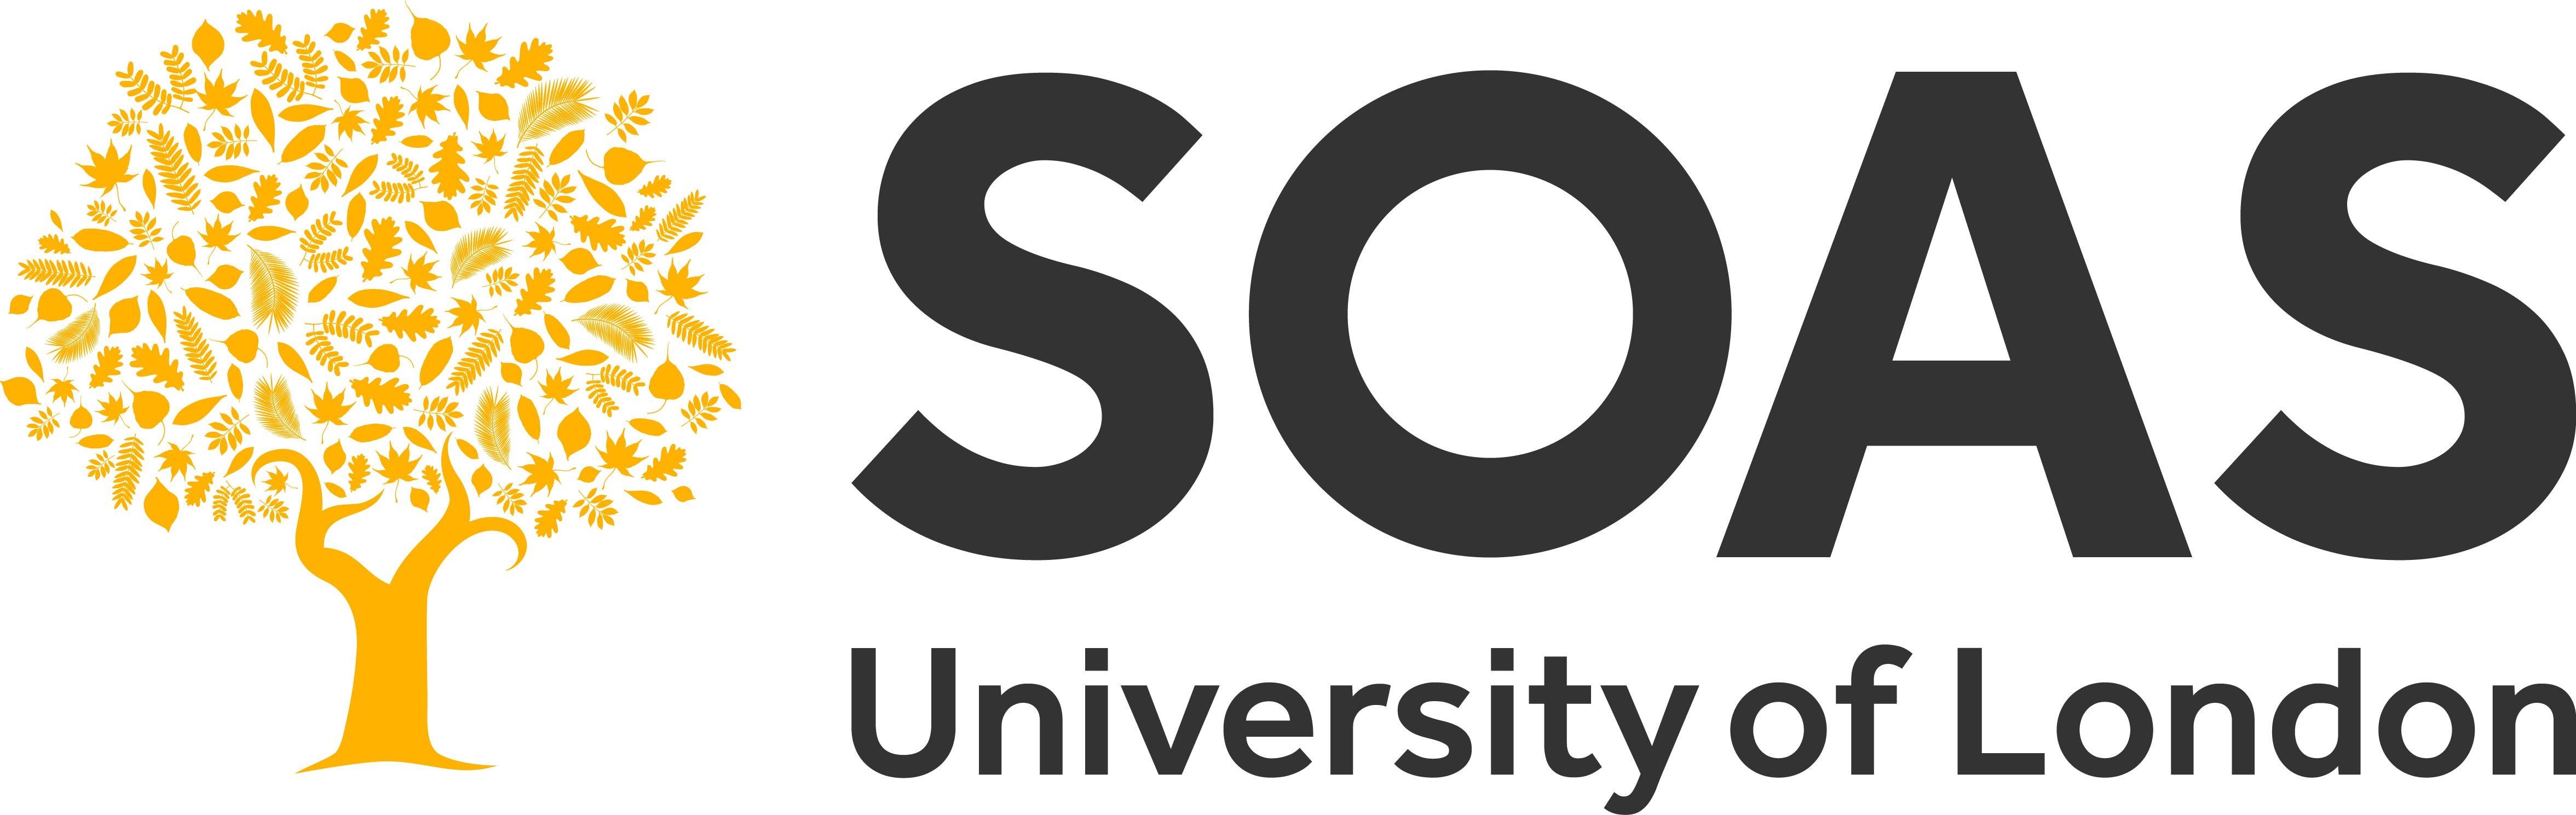 SOAS_large-size-full-colour-logo_CMYK